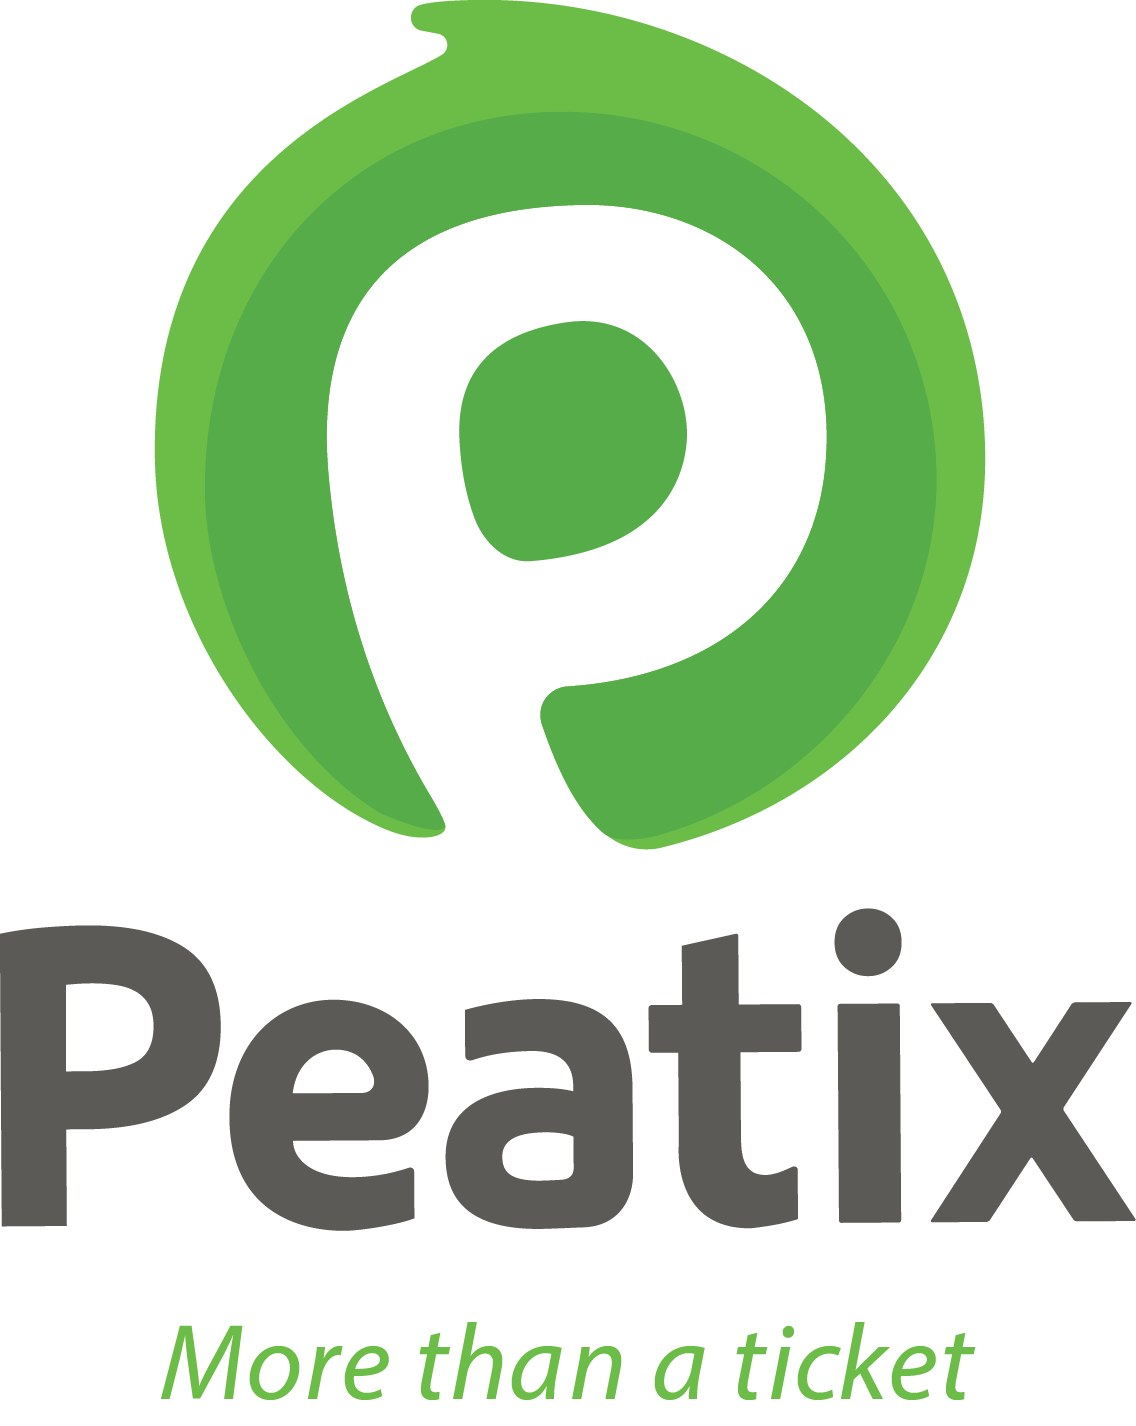 Peatix